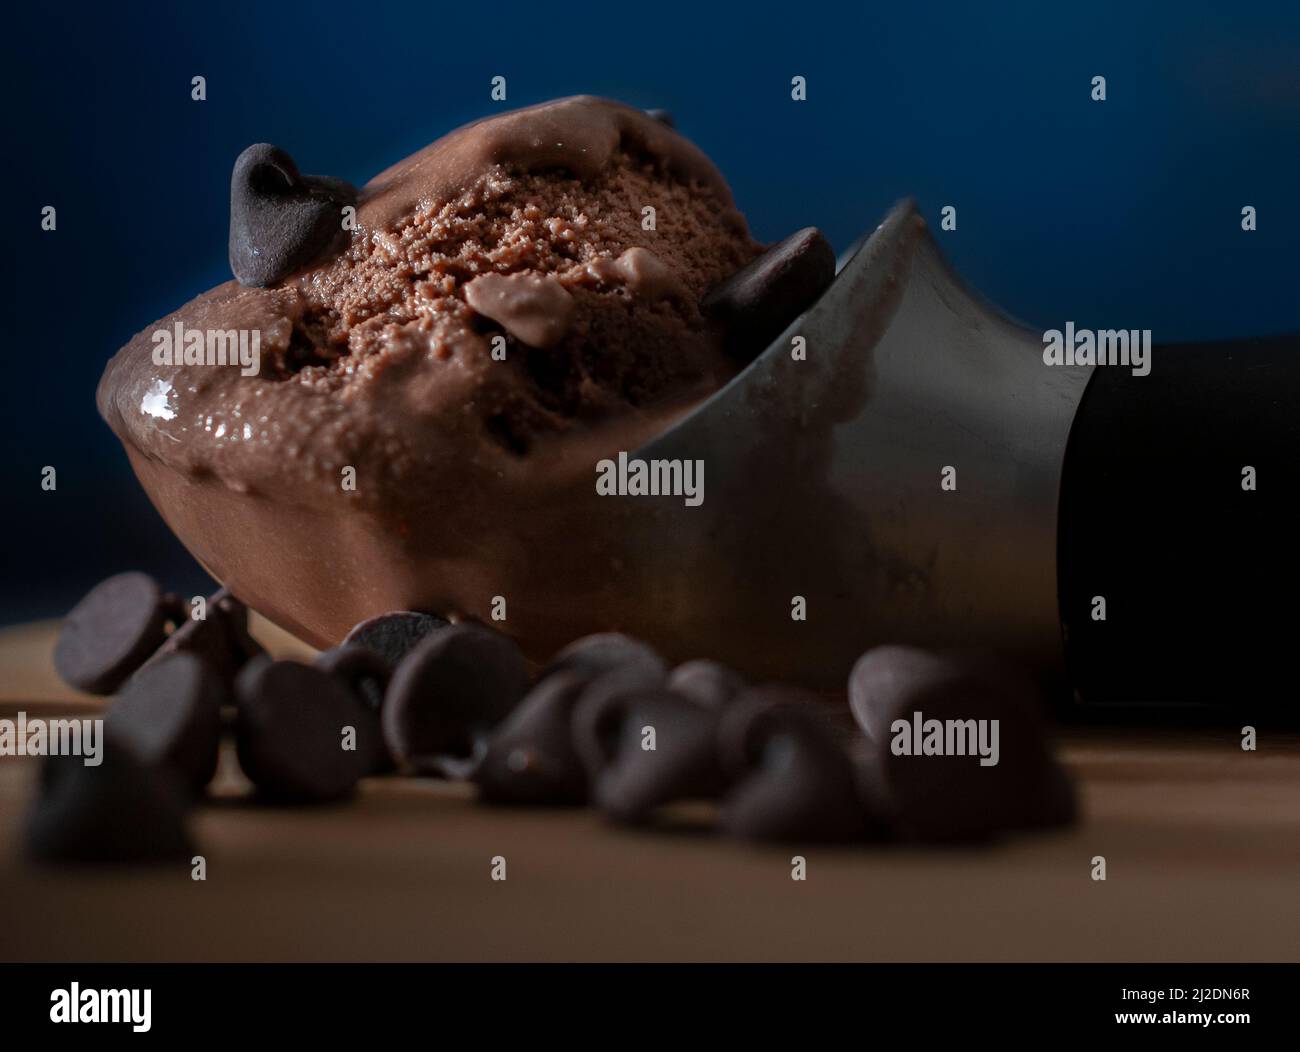 Schokoladeneis auf einem Löffel mit Schokoladensplittern auf der Seite und einem dunkelblauen Hintergrund Seitenansicht Makro-dunkle Lebensmittel-Fotografie Stockfoto